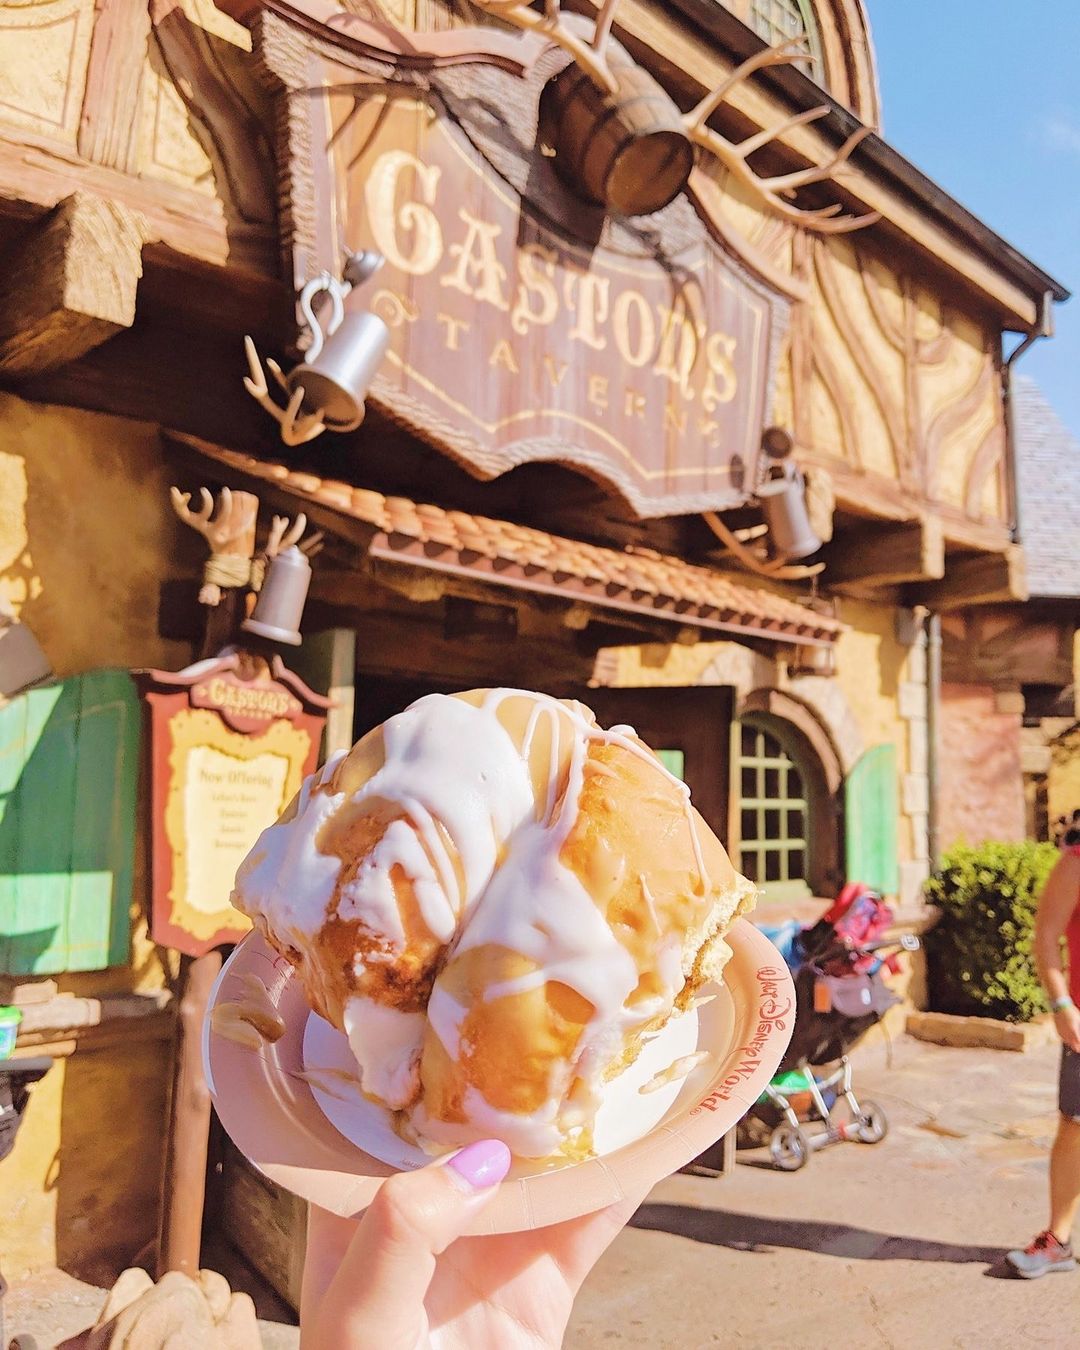 Gaston's Tavern - Restaurant at the Magic Kingdom